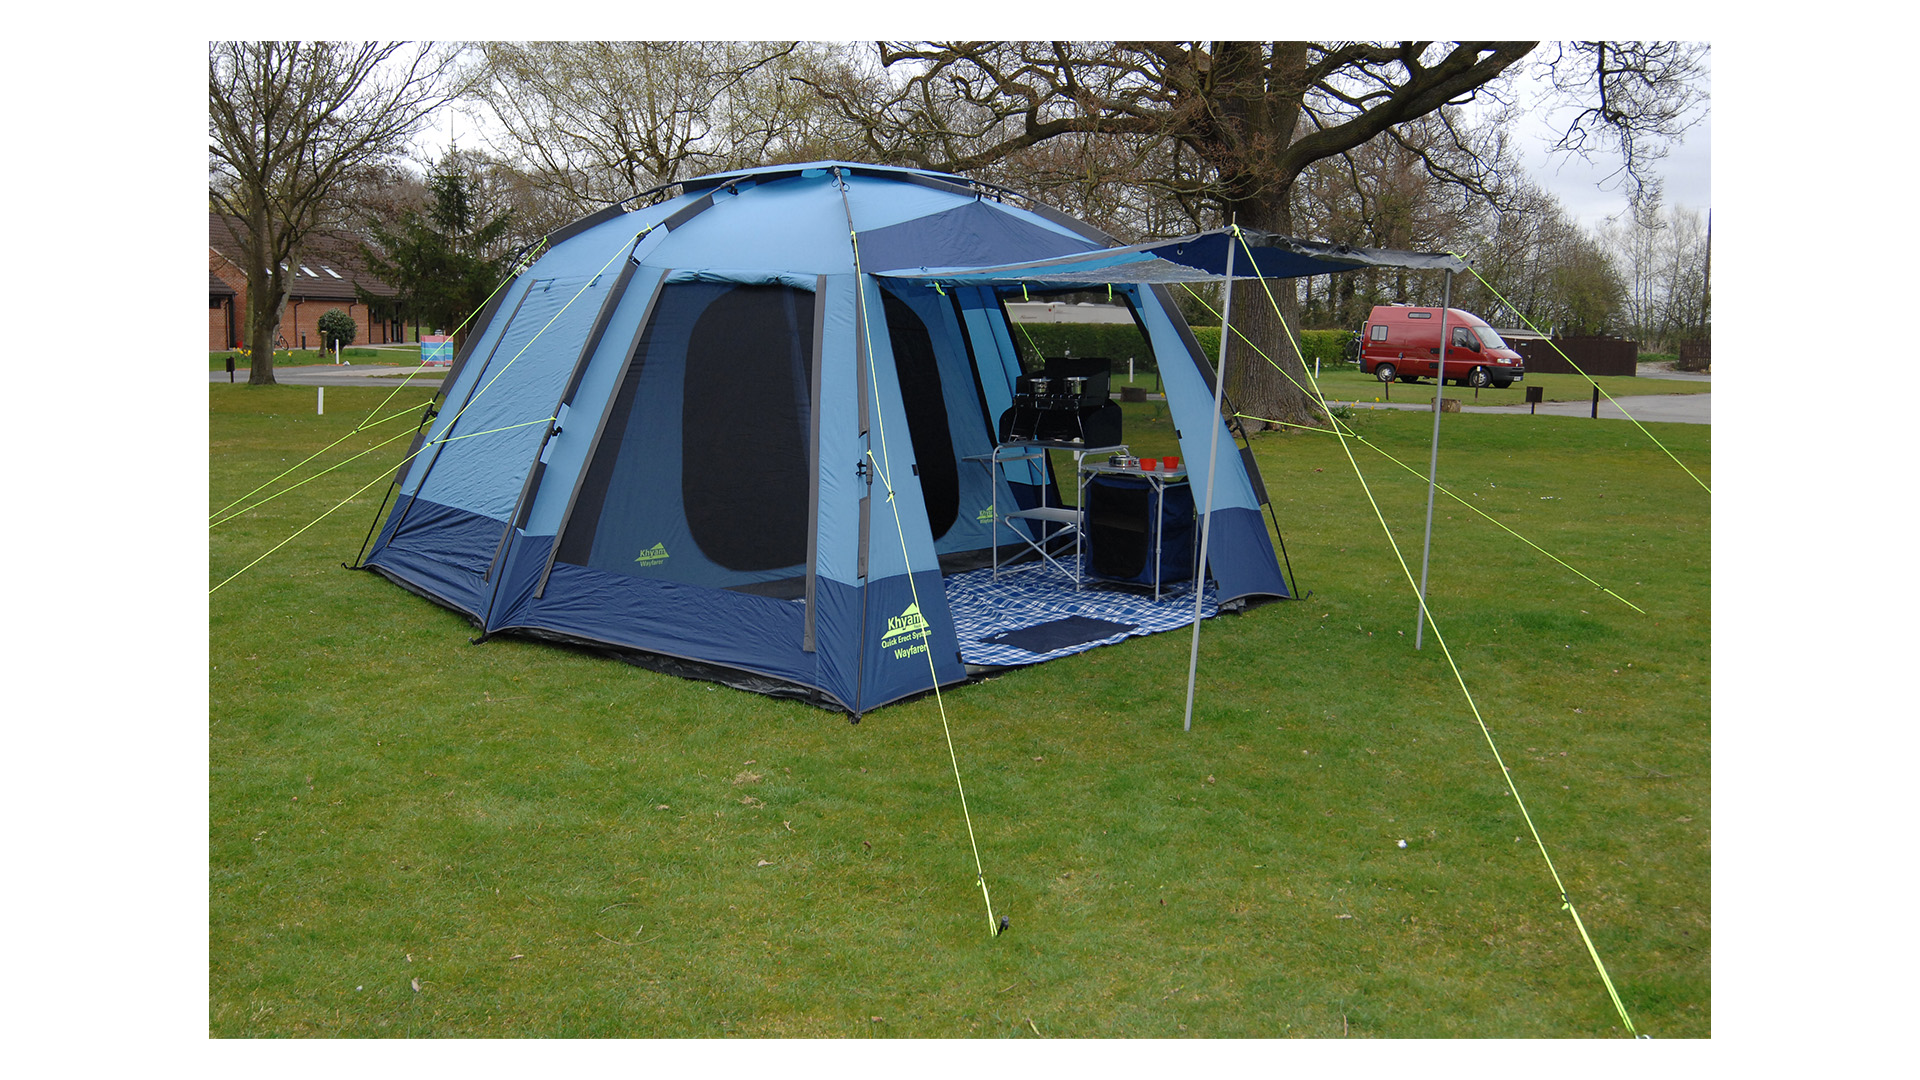 Large blue tent